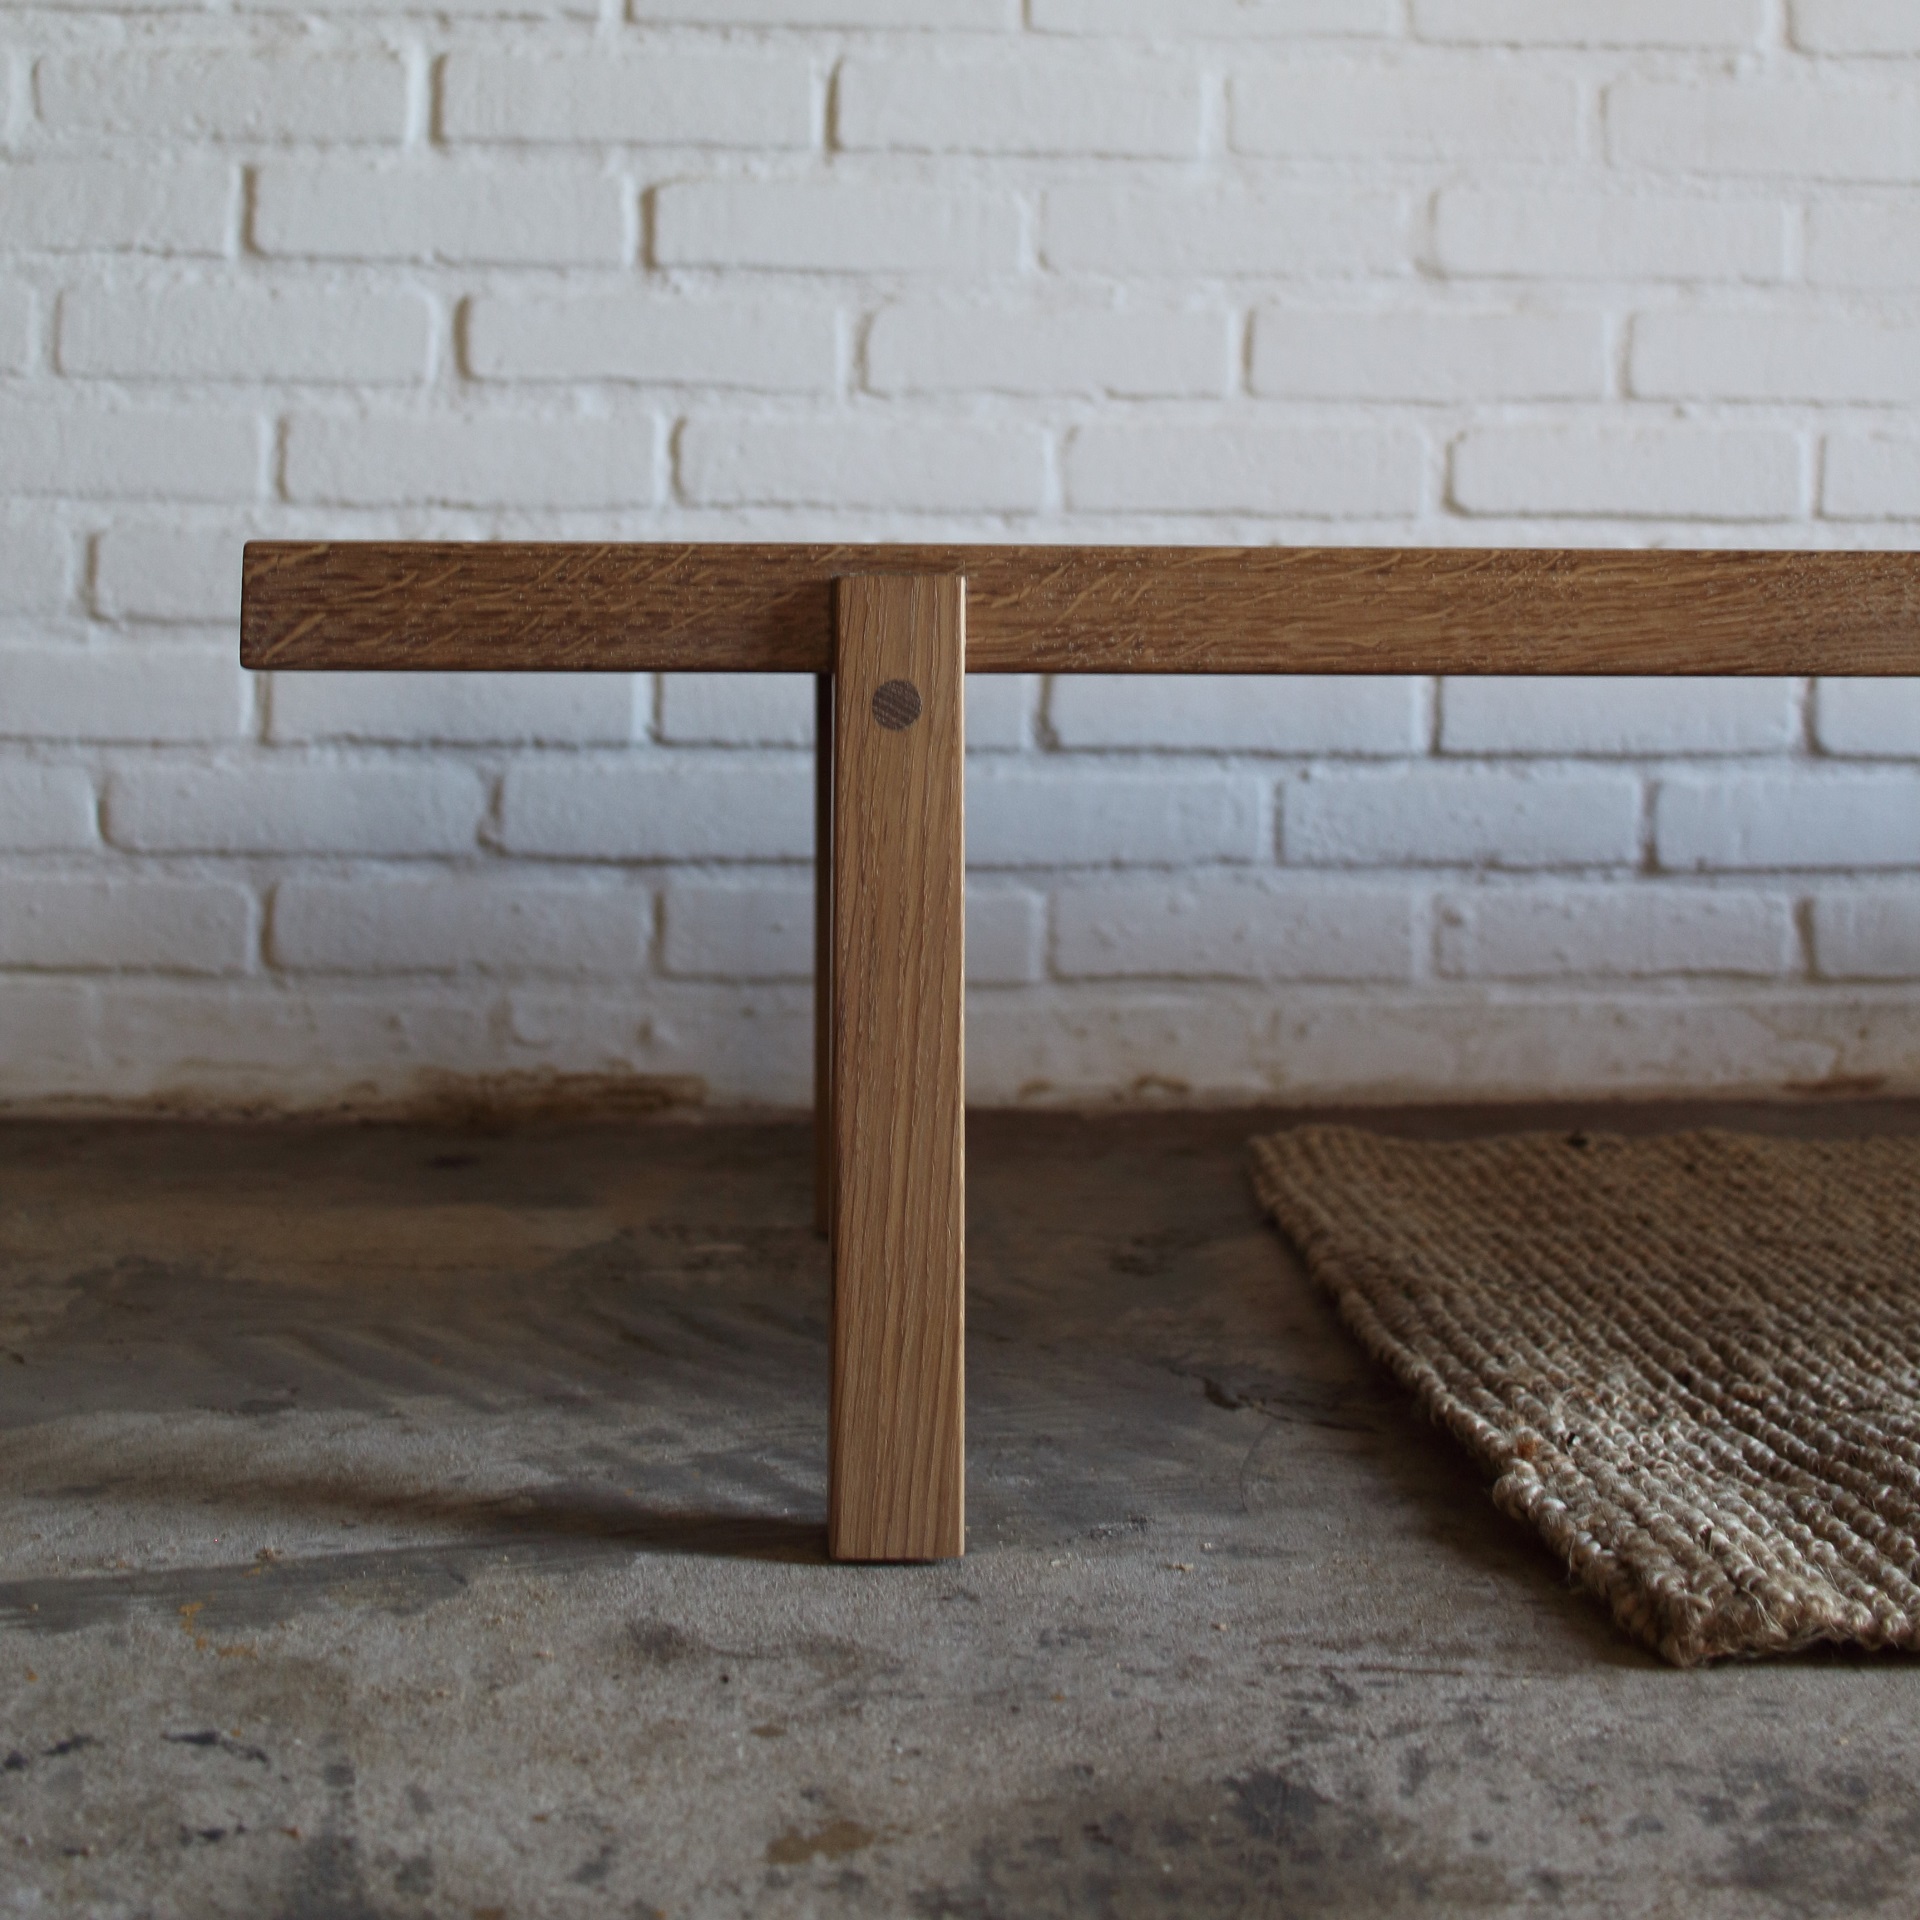 Cette table basse est un meuble solitaire à l'allure quelque peu discrète, avec de petits détails expressifs. Ainsi, à 5º, tout est bien en place.